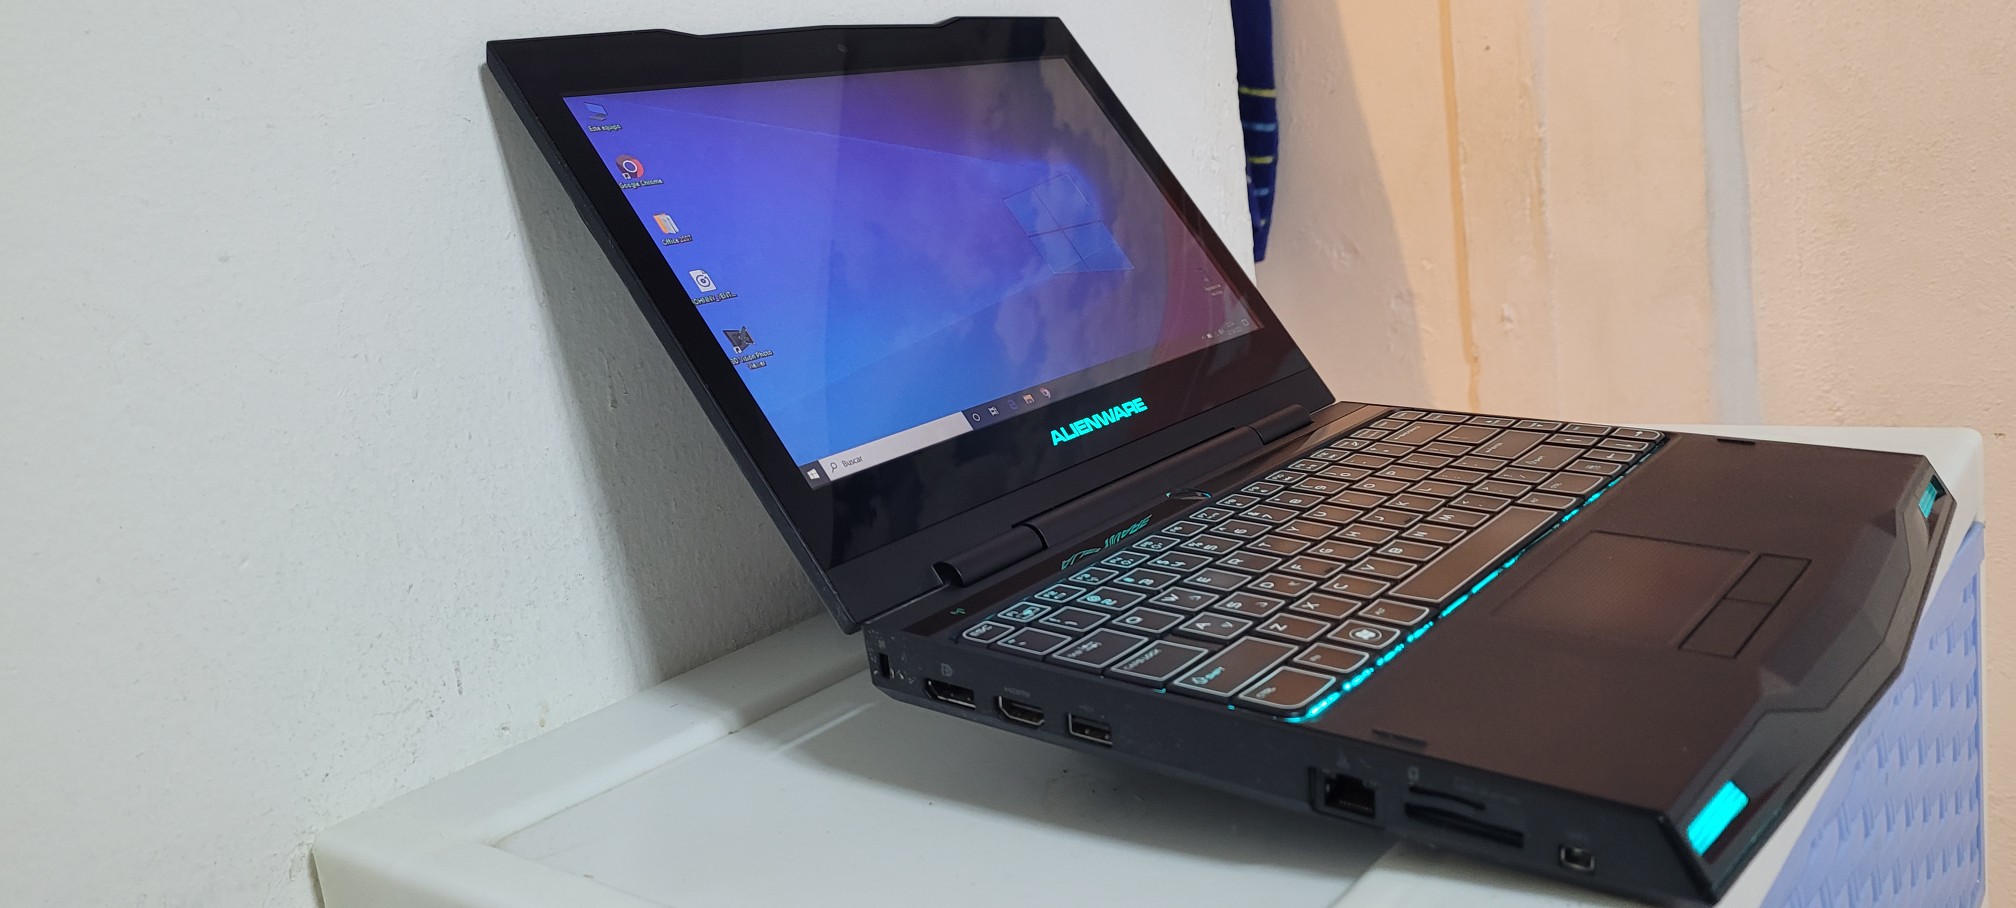 computadoras y laptops - laptop Gamer Alienware 13 Pulg Core i7 Ram 8gb Disco 512gb Solido Wifi 1